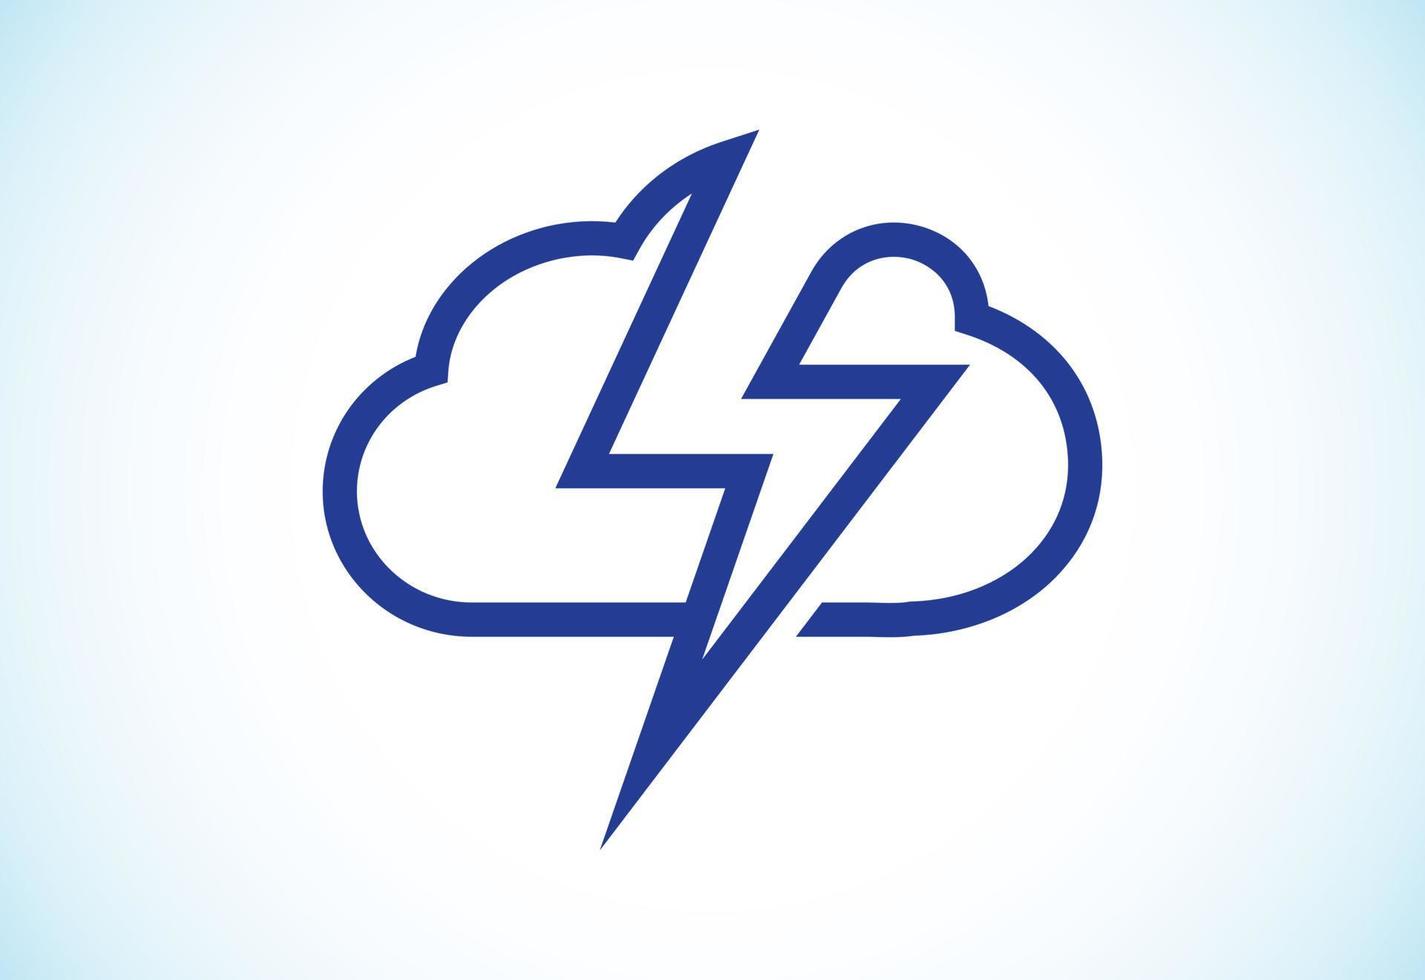 kreative, einfache und moderne Cloud-Logo-Designvorlage für das Unternehmen vektor